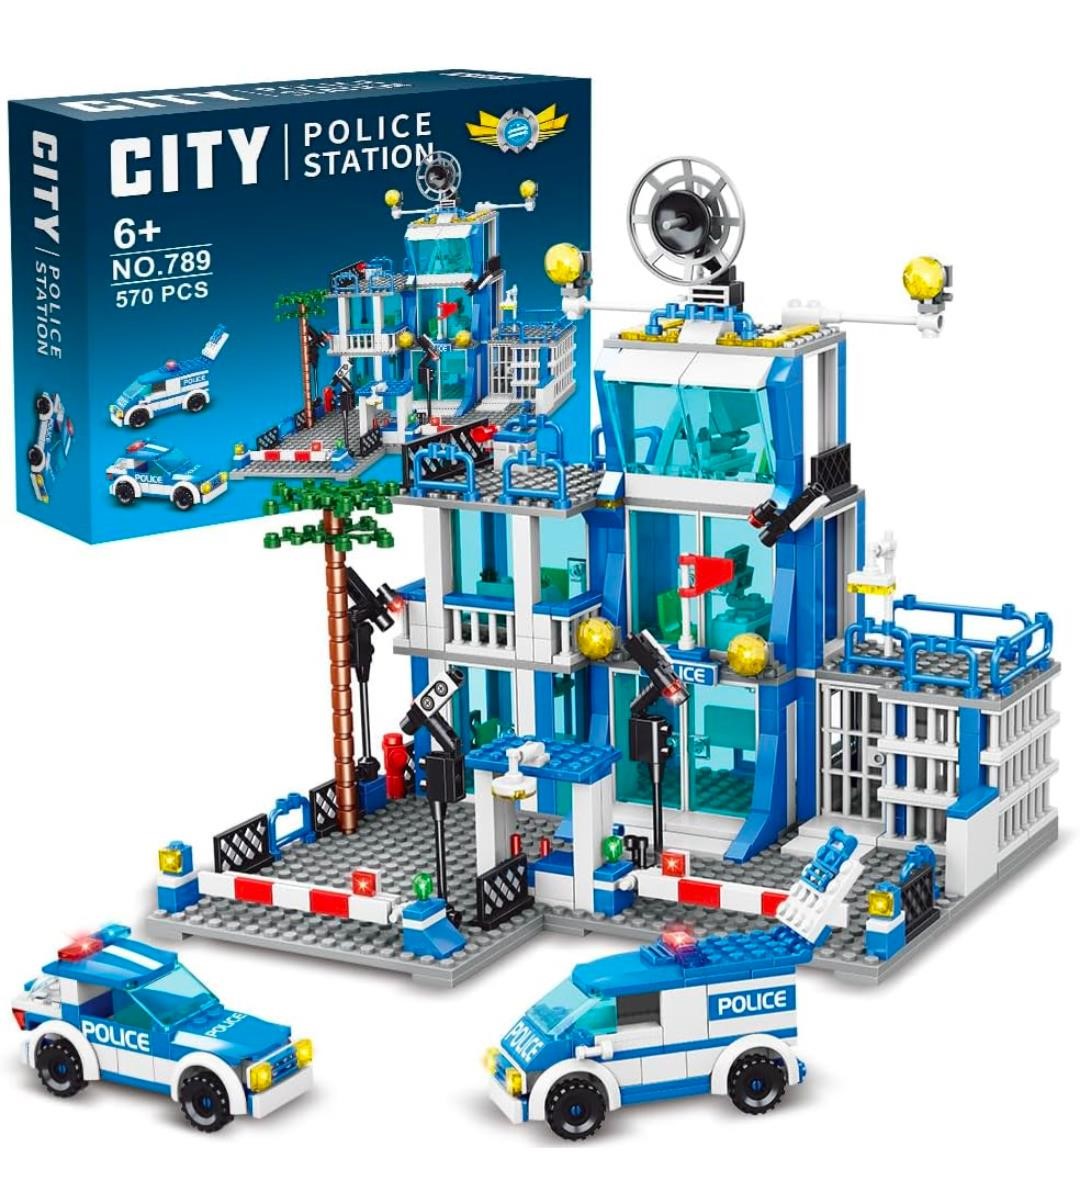 ($91) MindBox City Police Station Building Sets